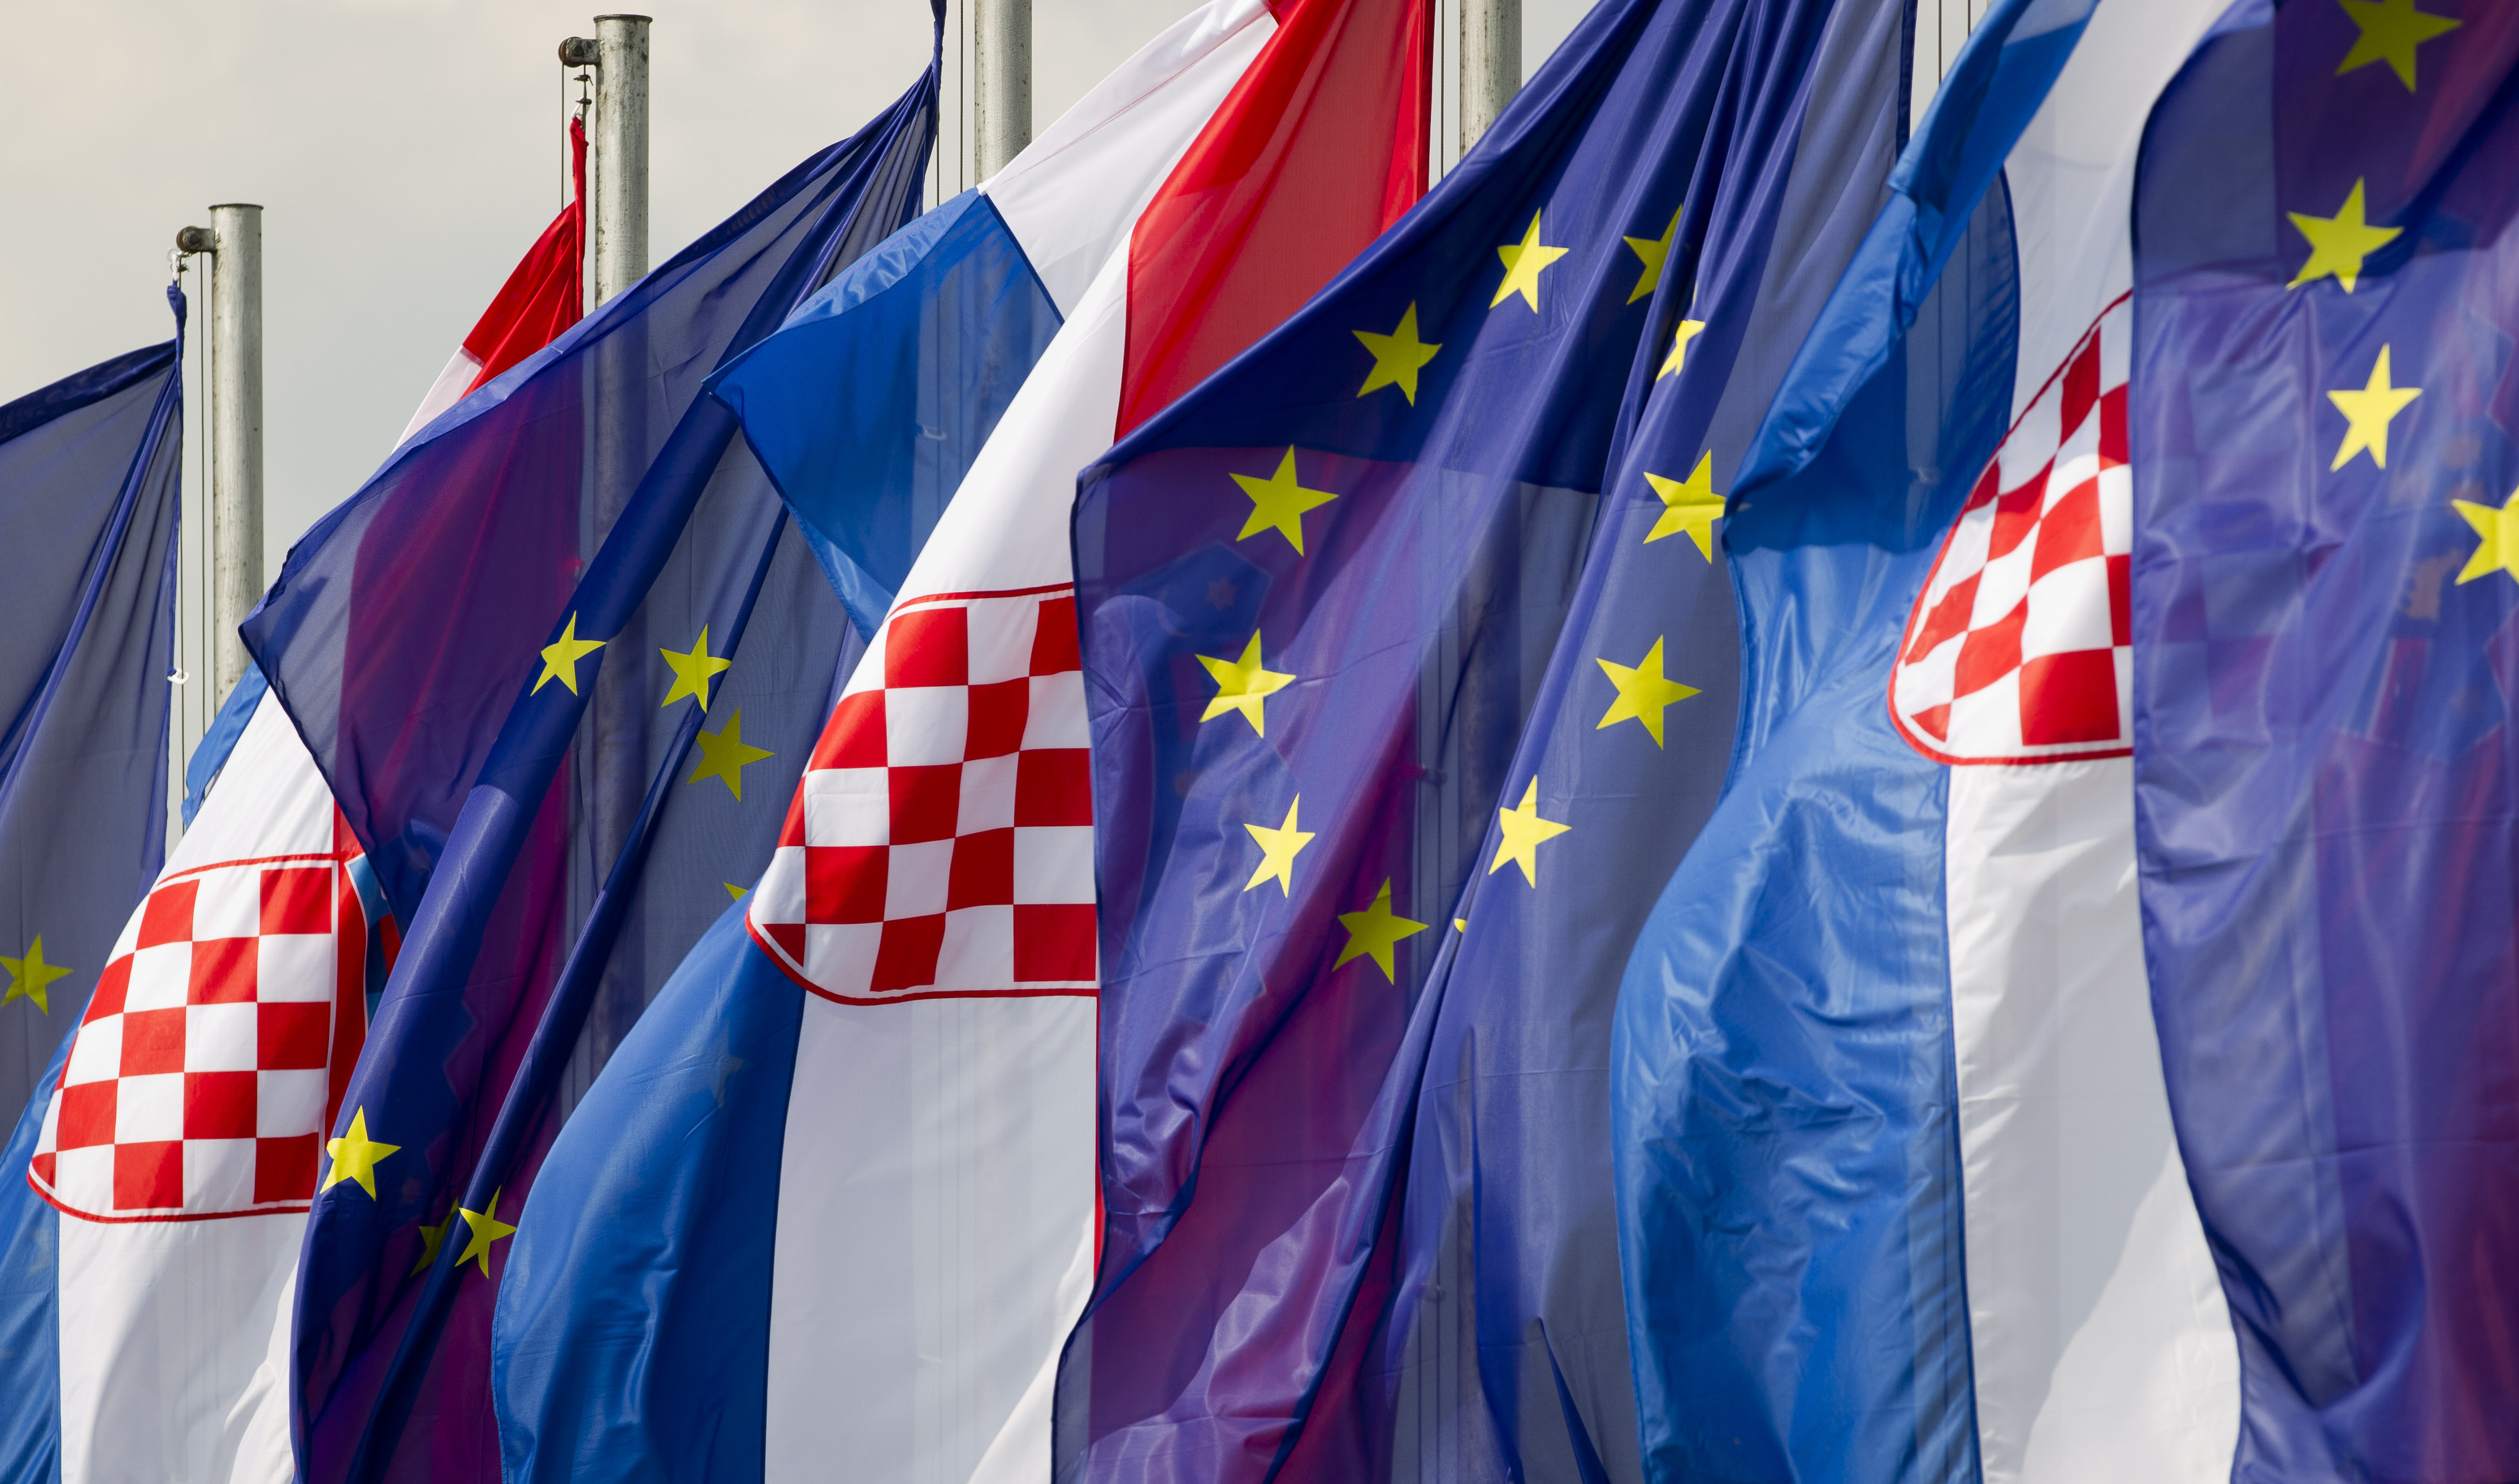 Κροατία: Επίσημο μέλος της Ευρωπαϊκής Ενωσης